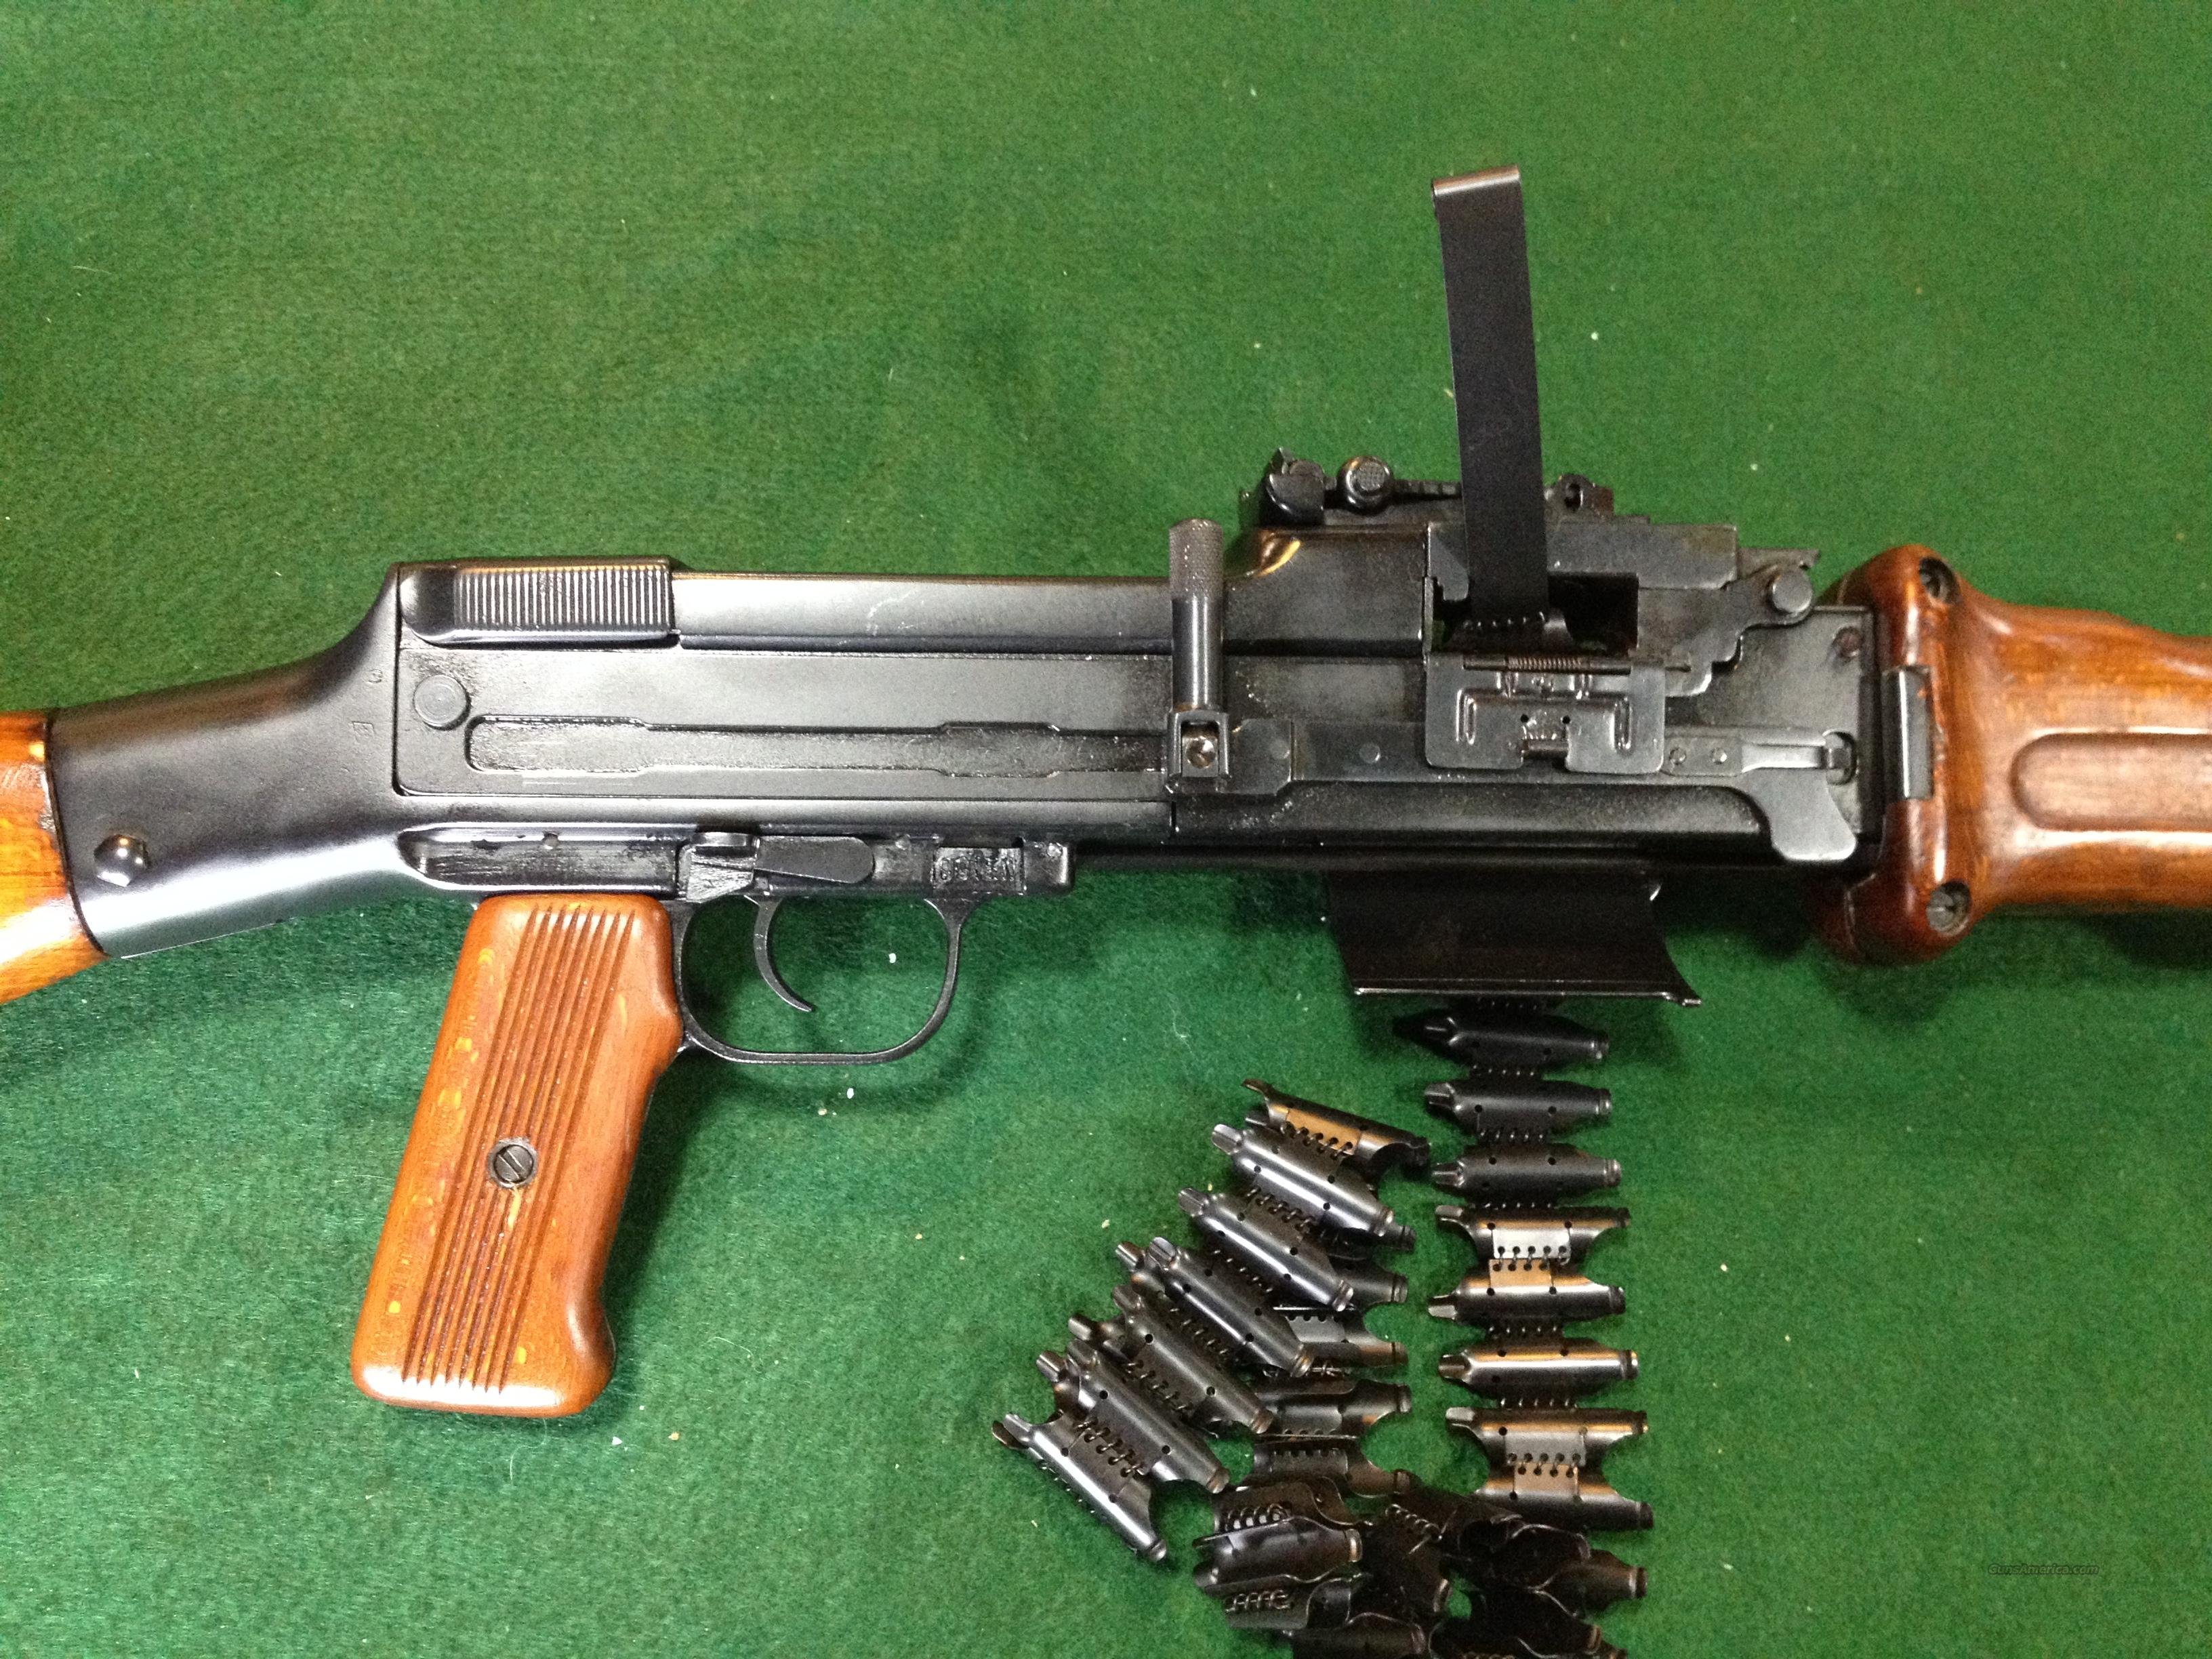 DSA RPD Rifle 7.62x39 for sale